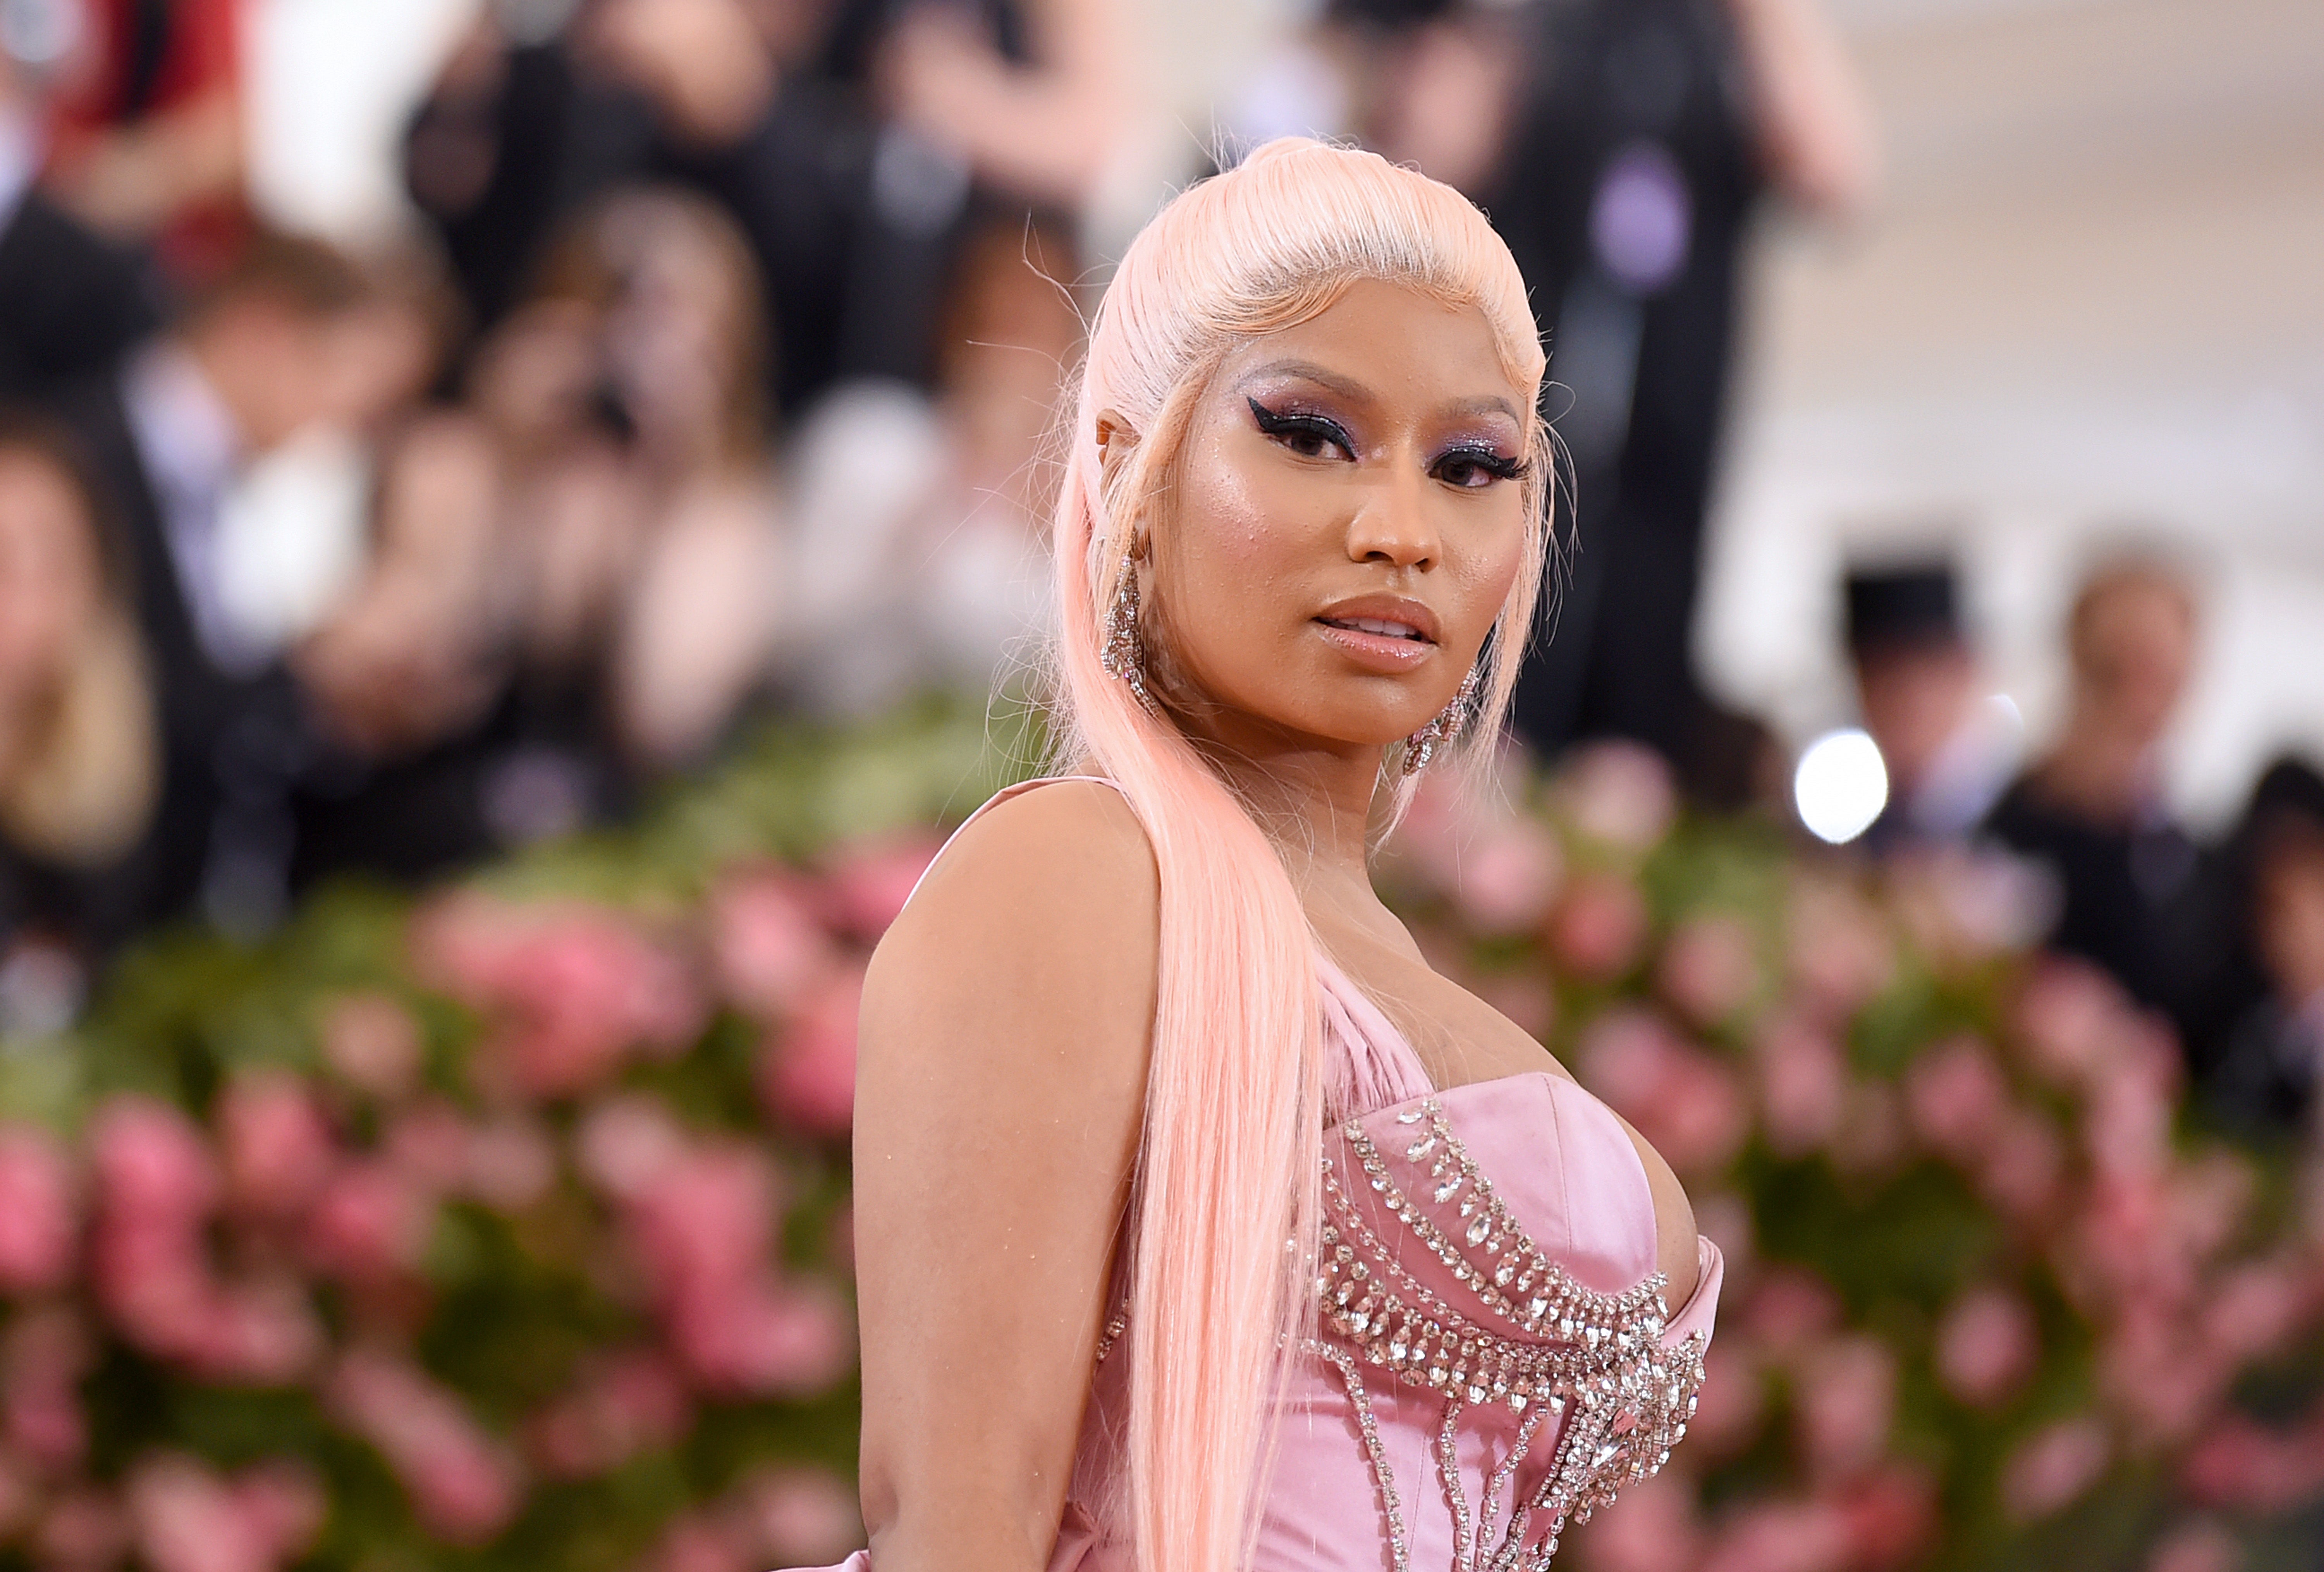 Nicki Minaj attends the Met Gala Celebrating Camp at Metropolitan Museum of Art in 2019 in New York City